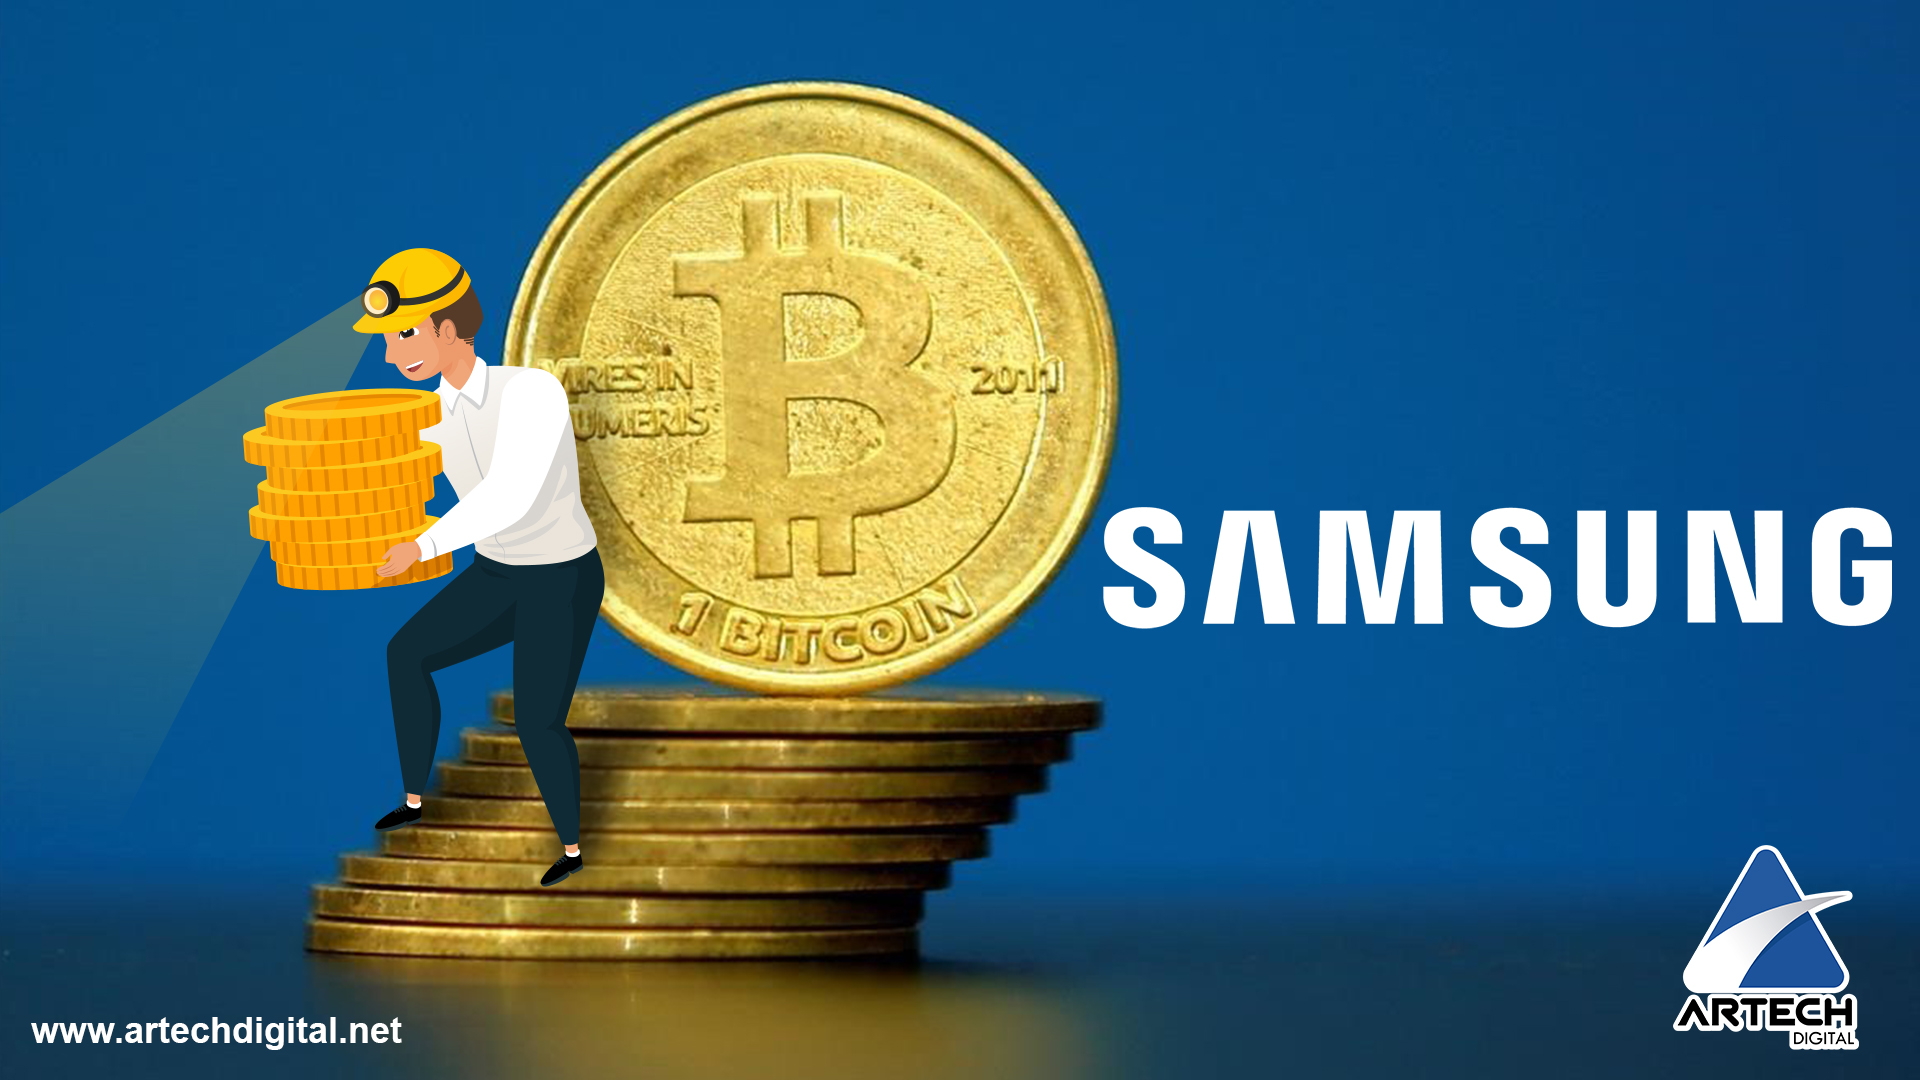 Samsung - mineria de criptomonedas - Artech Digital